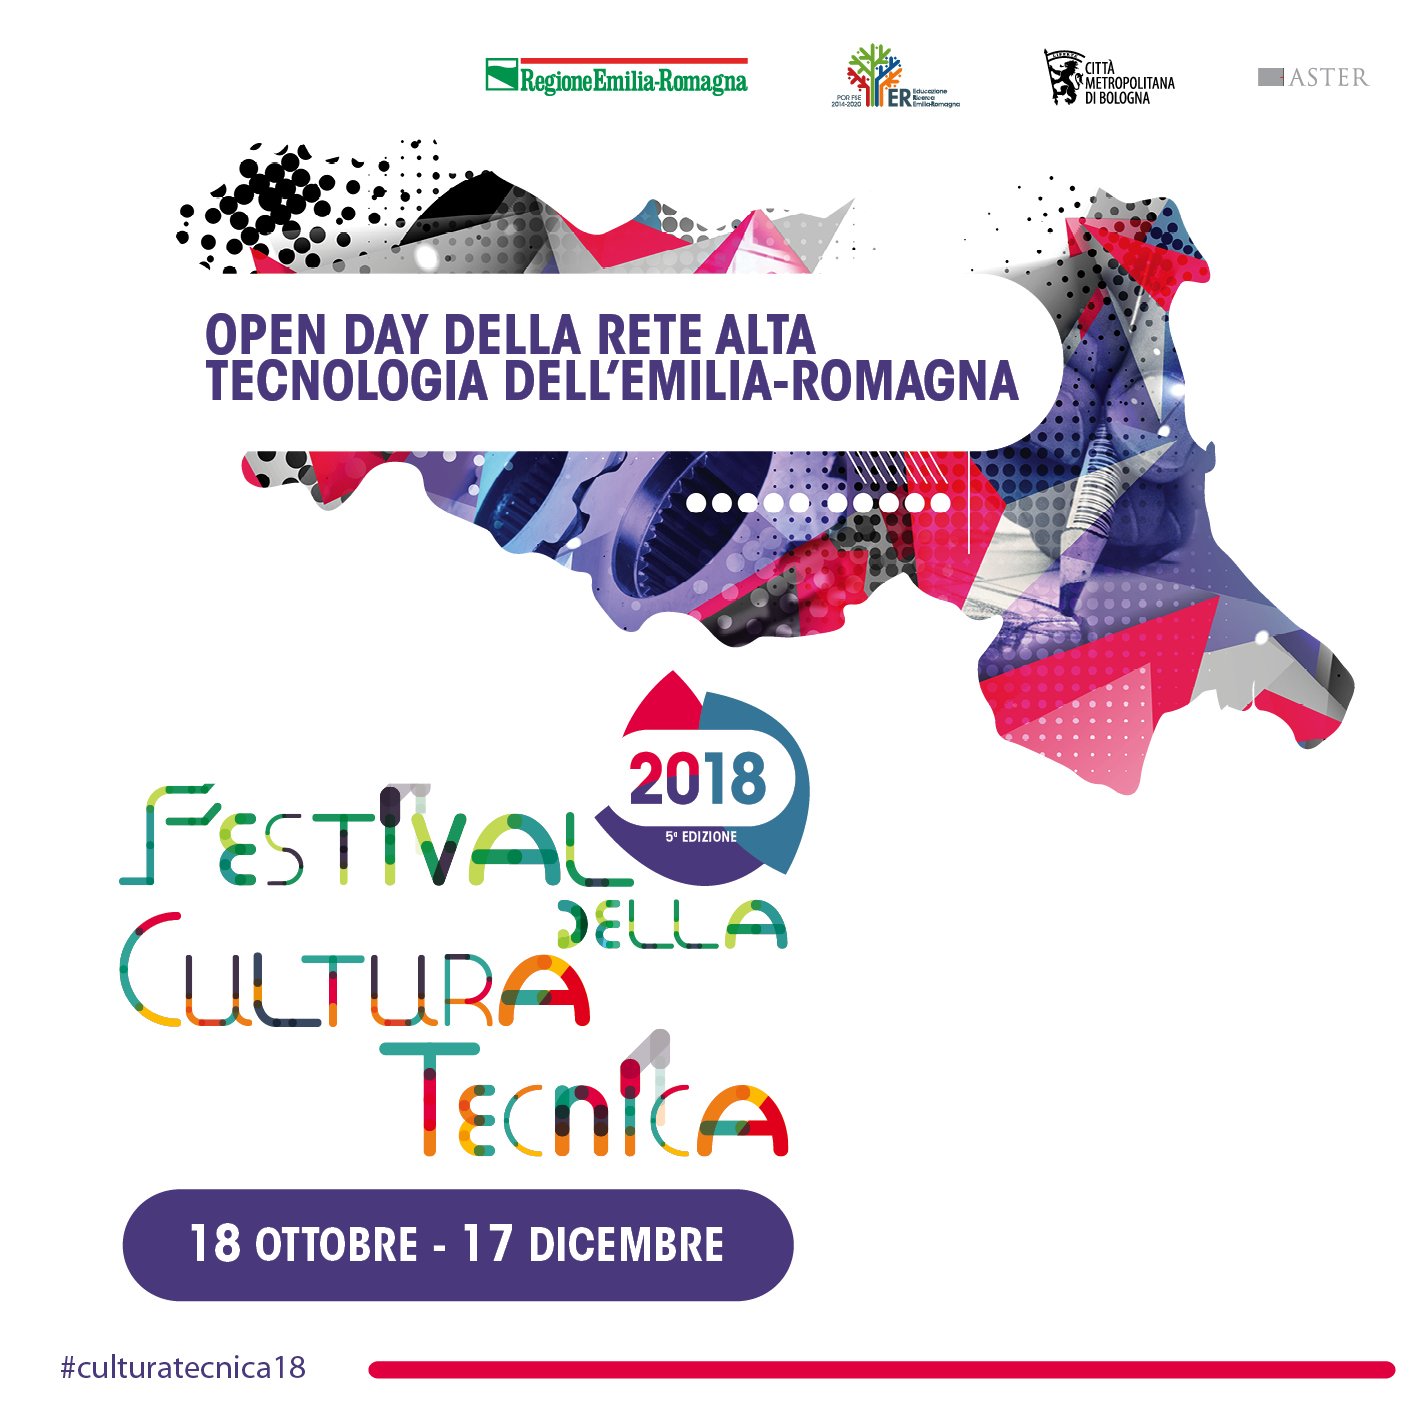 Open Day della Rete Alta Tecnologia dell'Emilia-Romagna